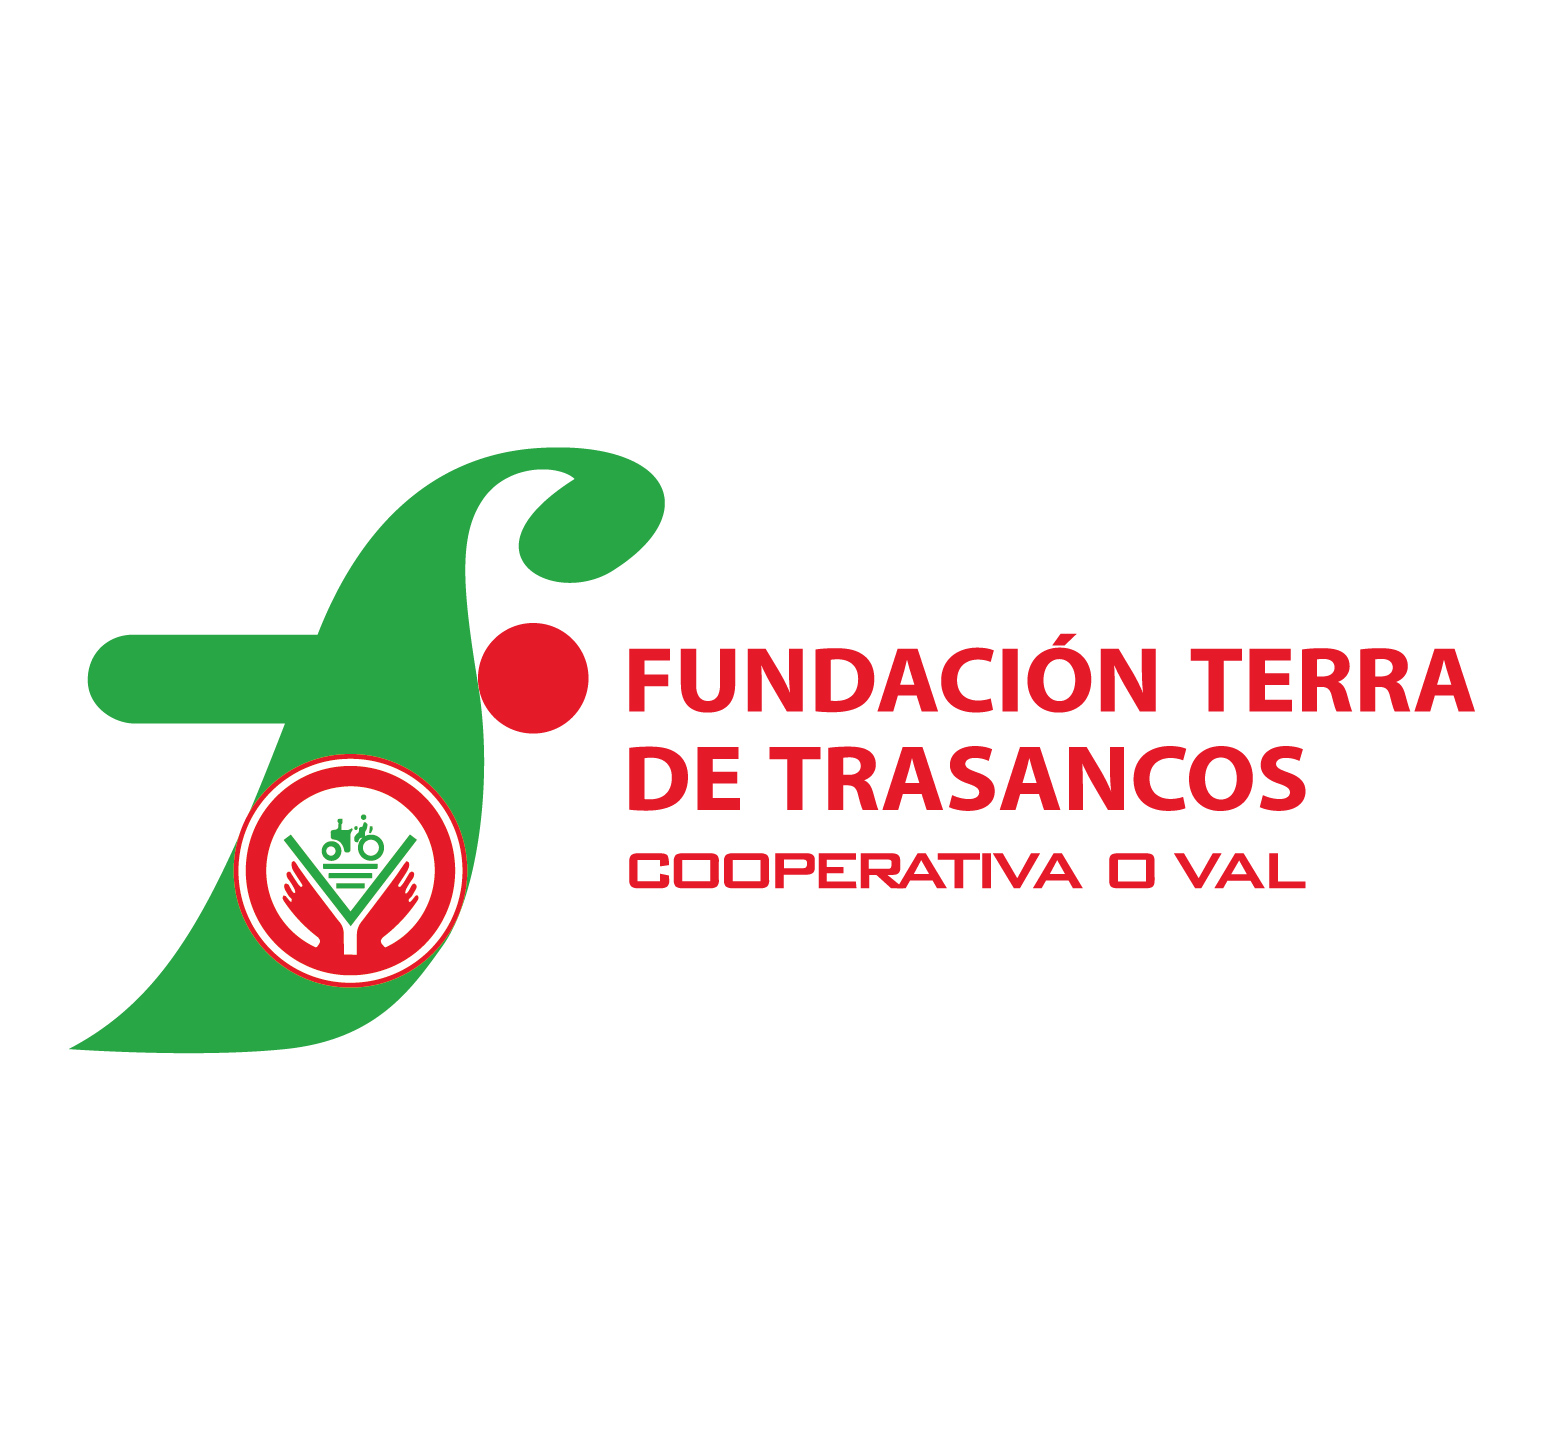 Fundación Terra de Trasancos